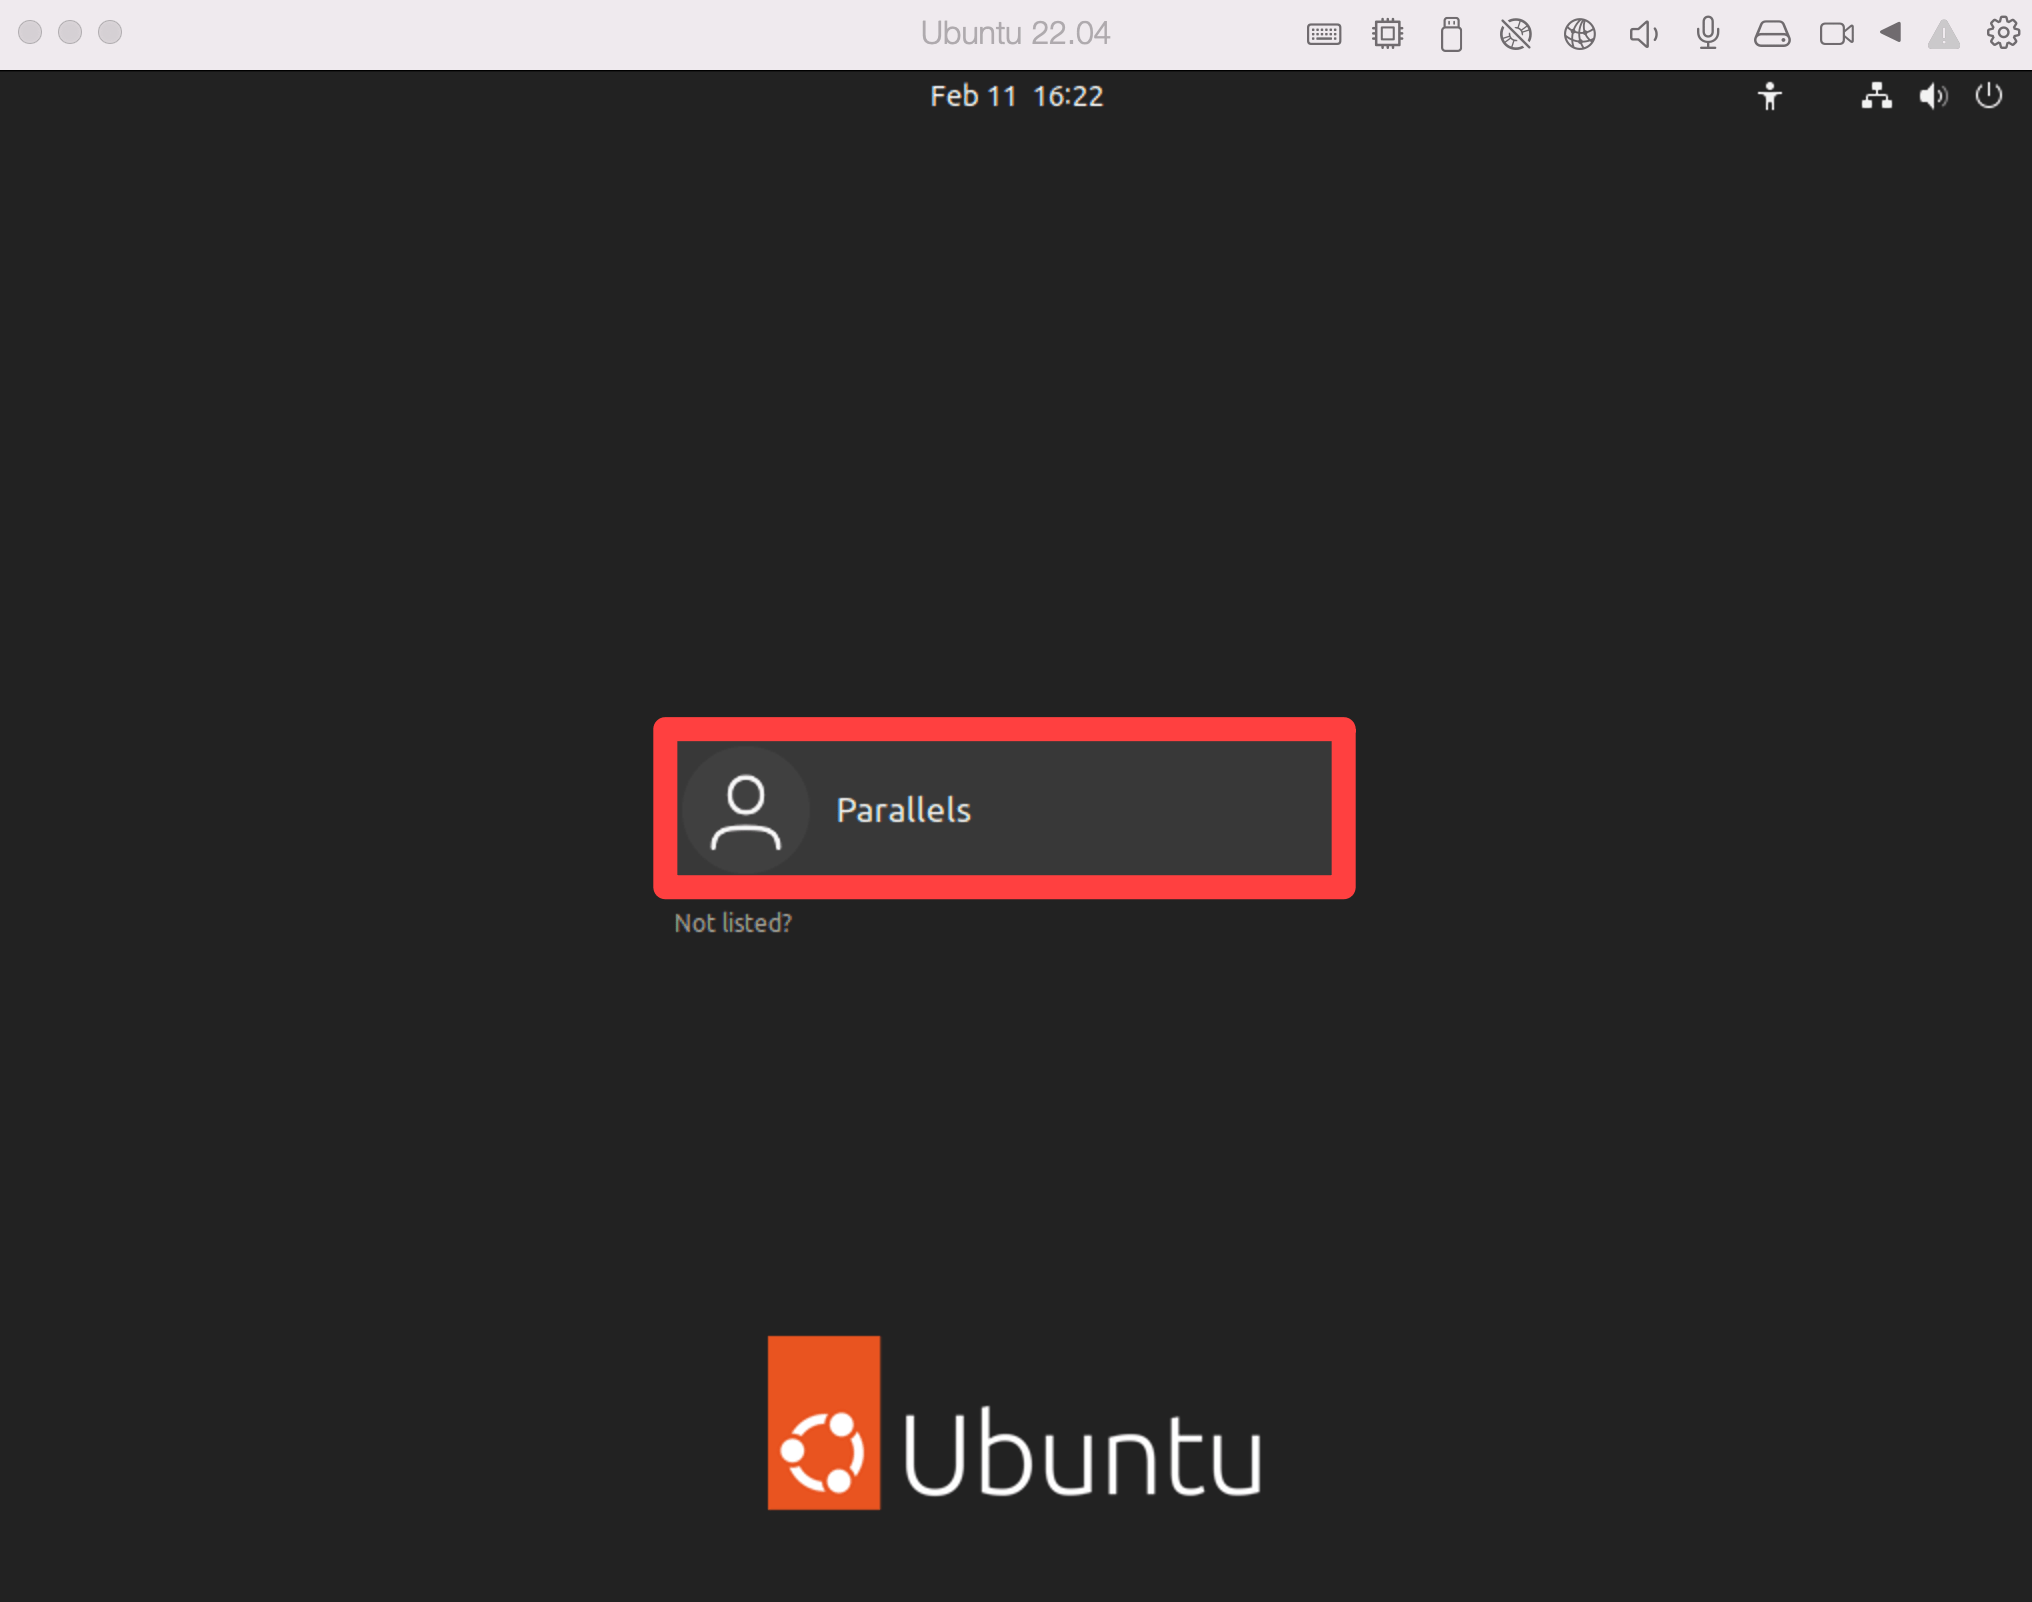 Ubuntuログインユーザー